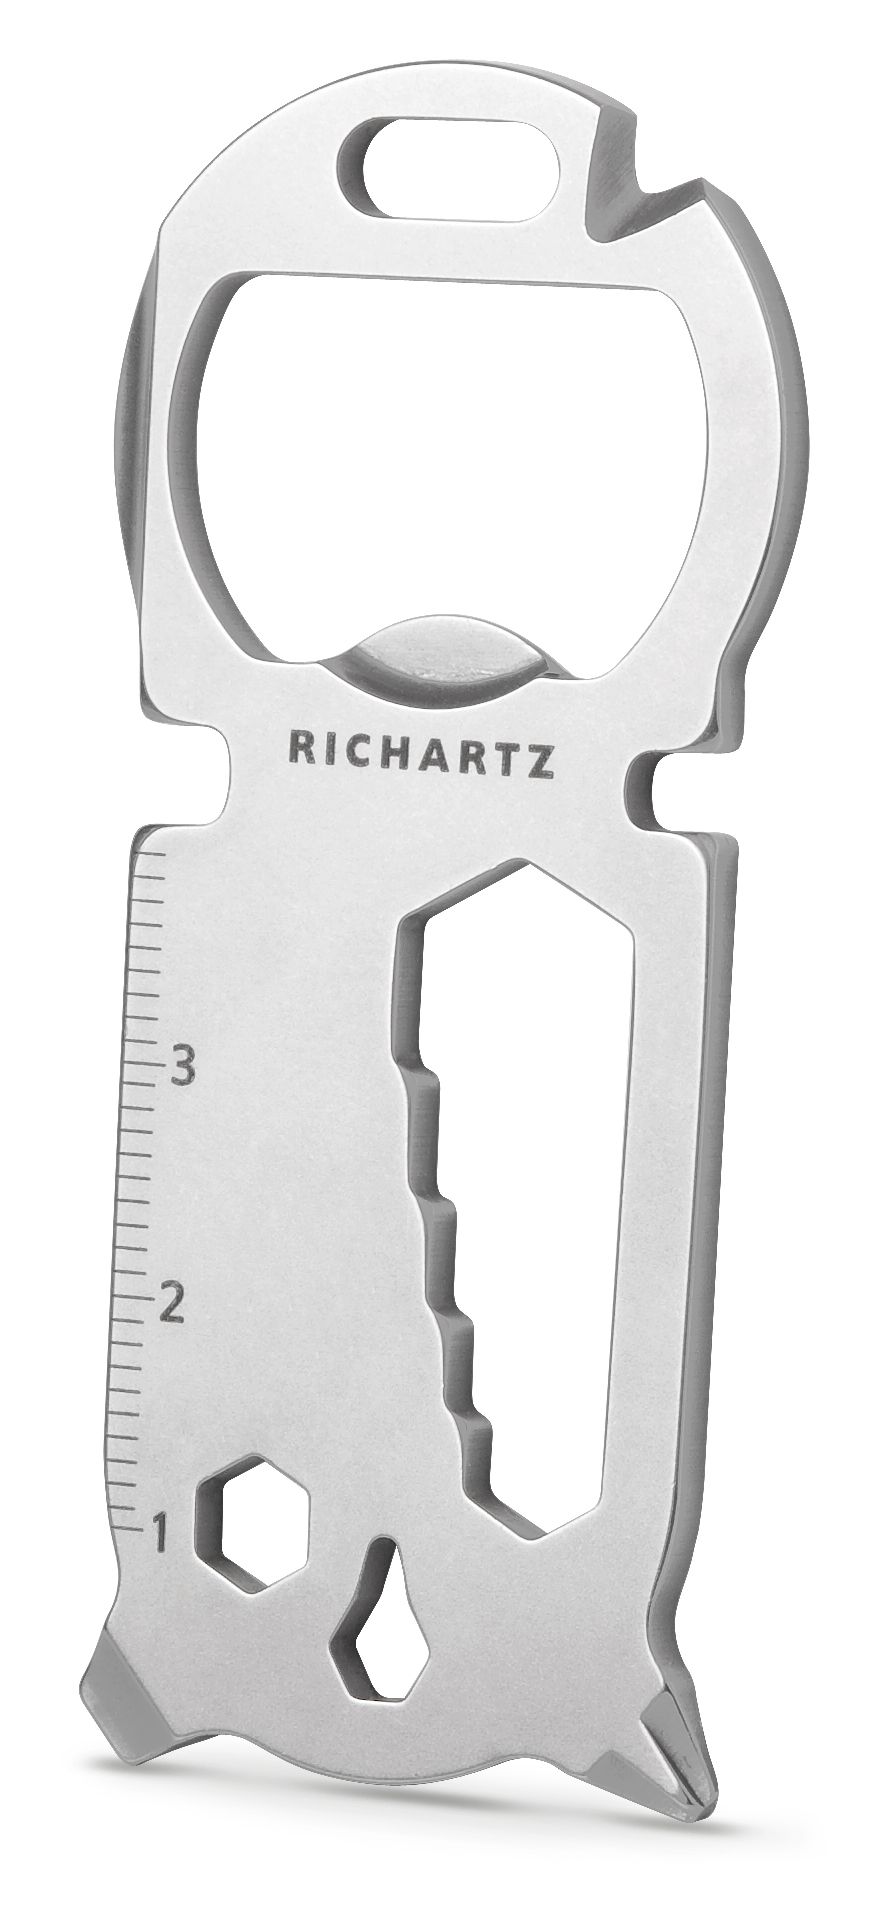 RICHARTZ Key Tool als Werbeartikel ⇒ jetzt bedrucken!